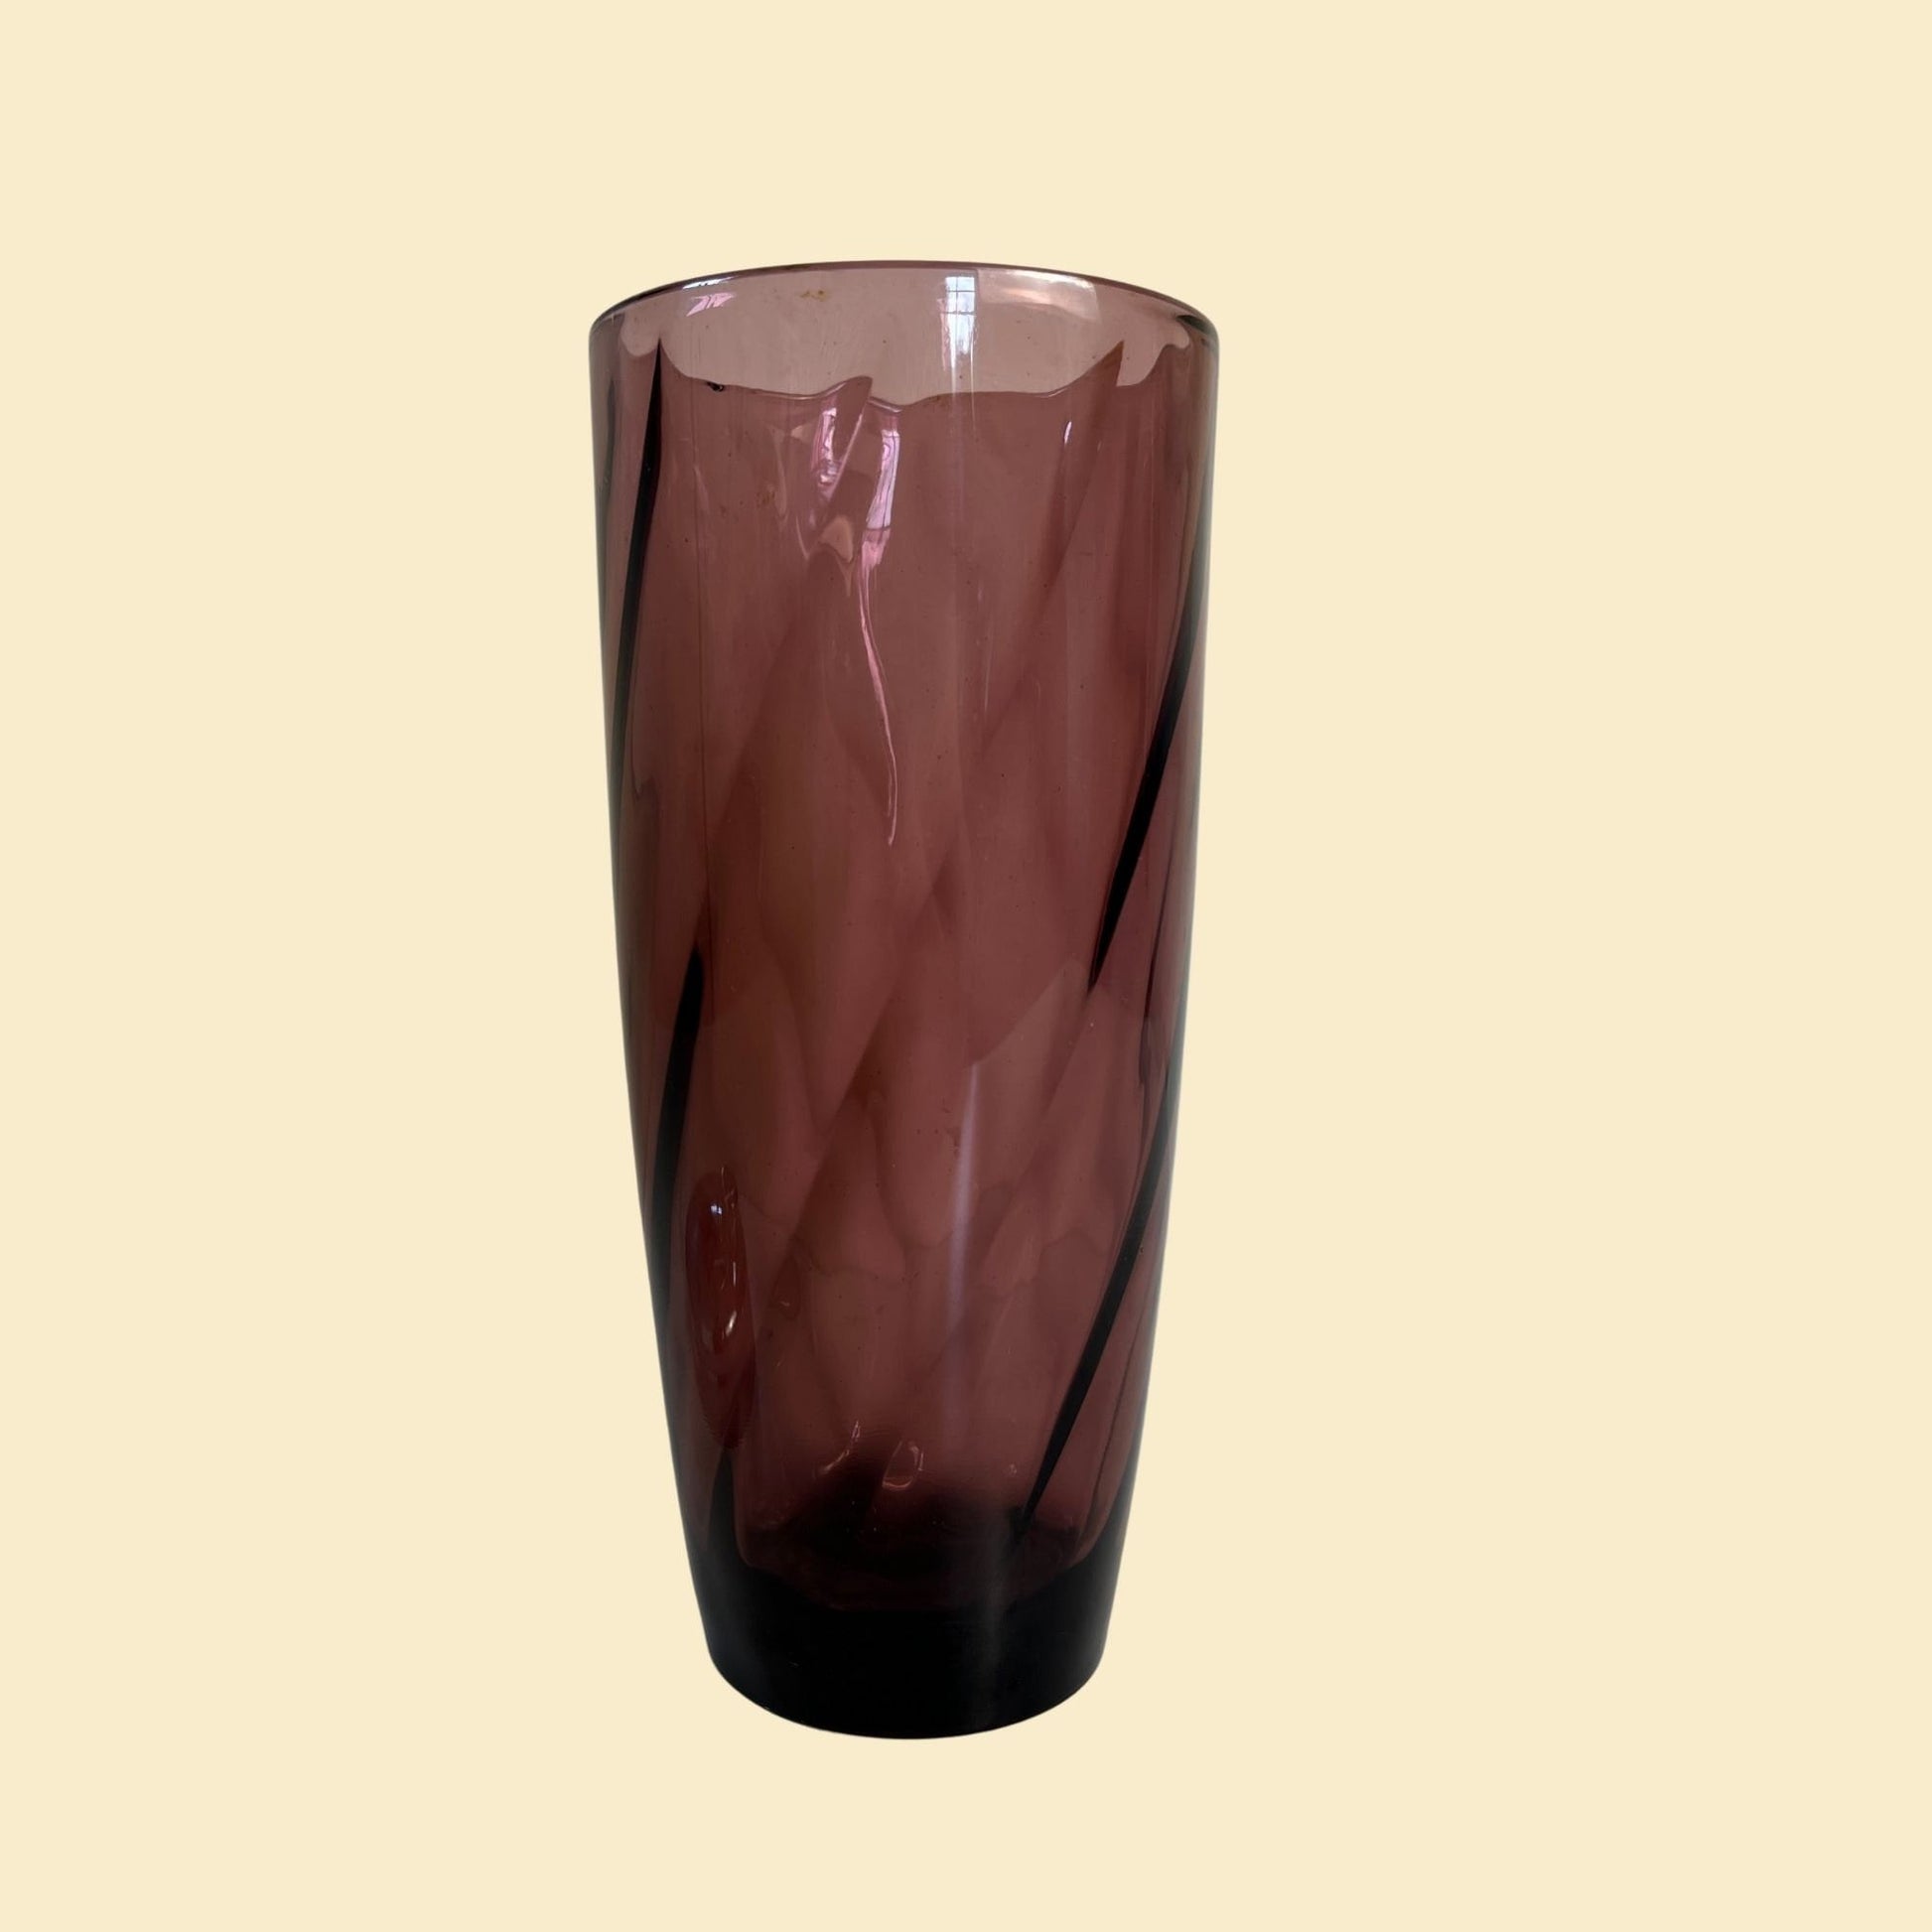 1960s Hazel Atlas cocktail shaker, vintage purple / amethyst swirl pattern glass shaker with metal lid